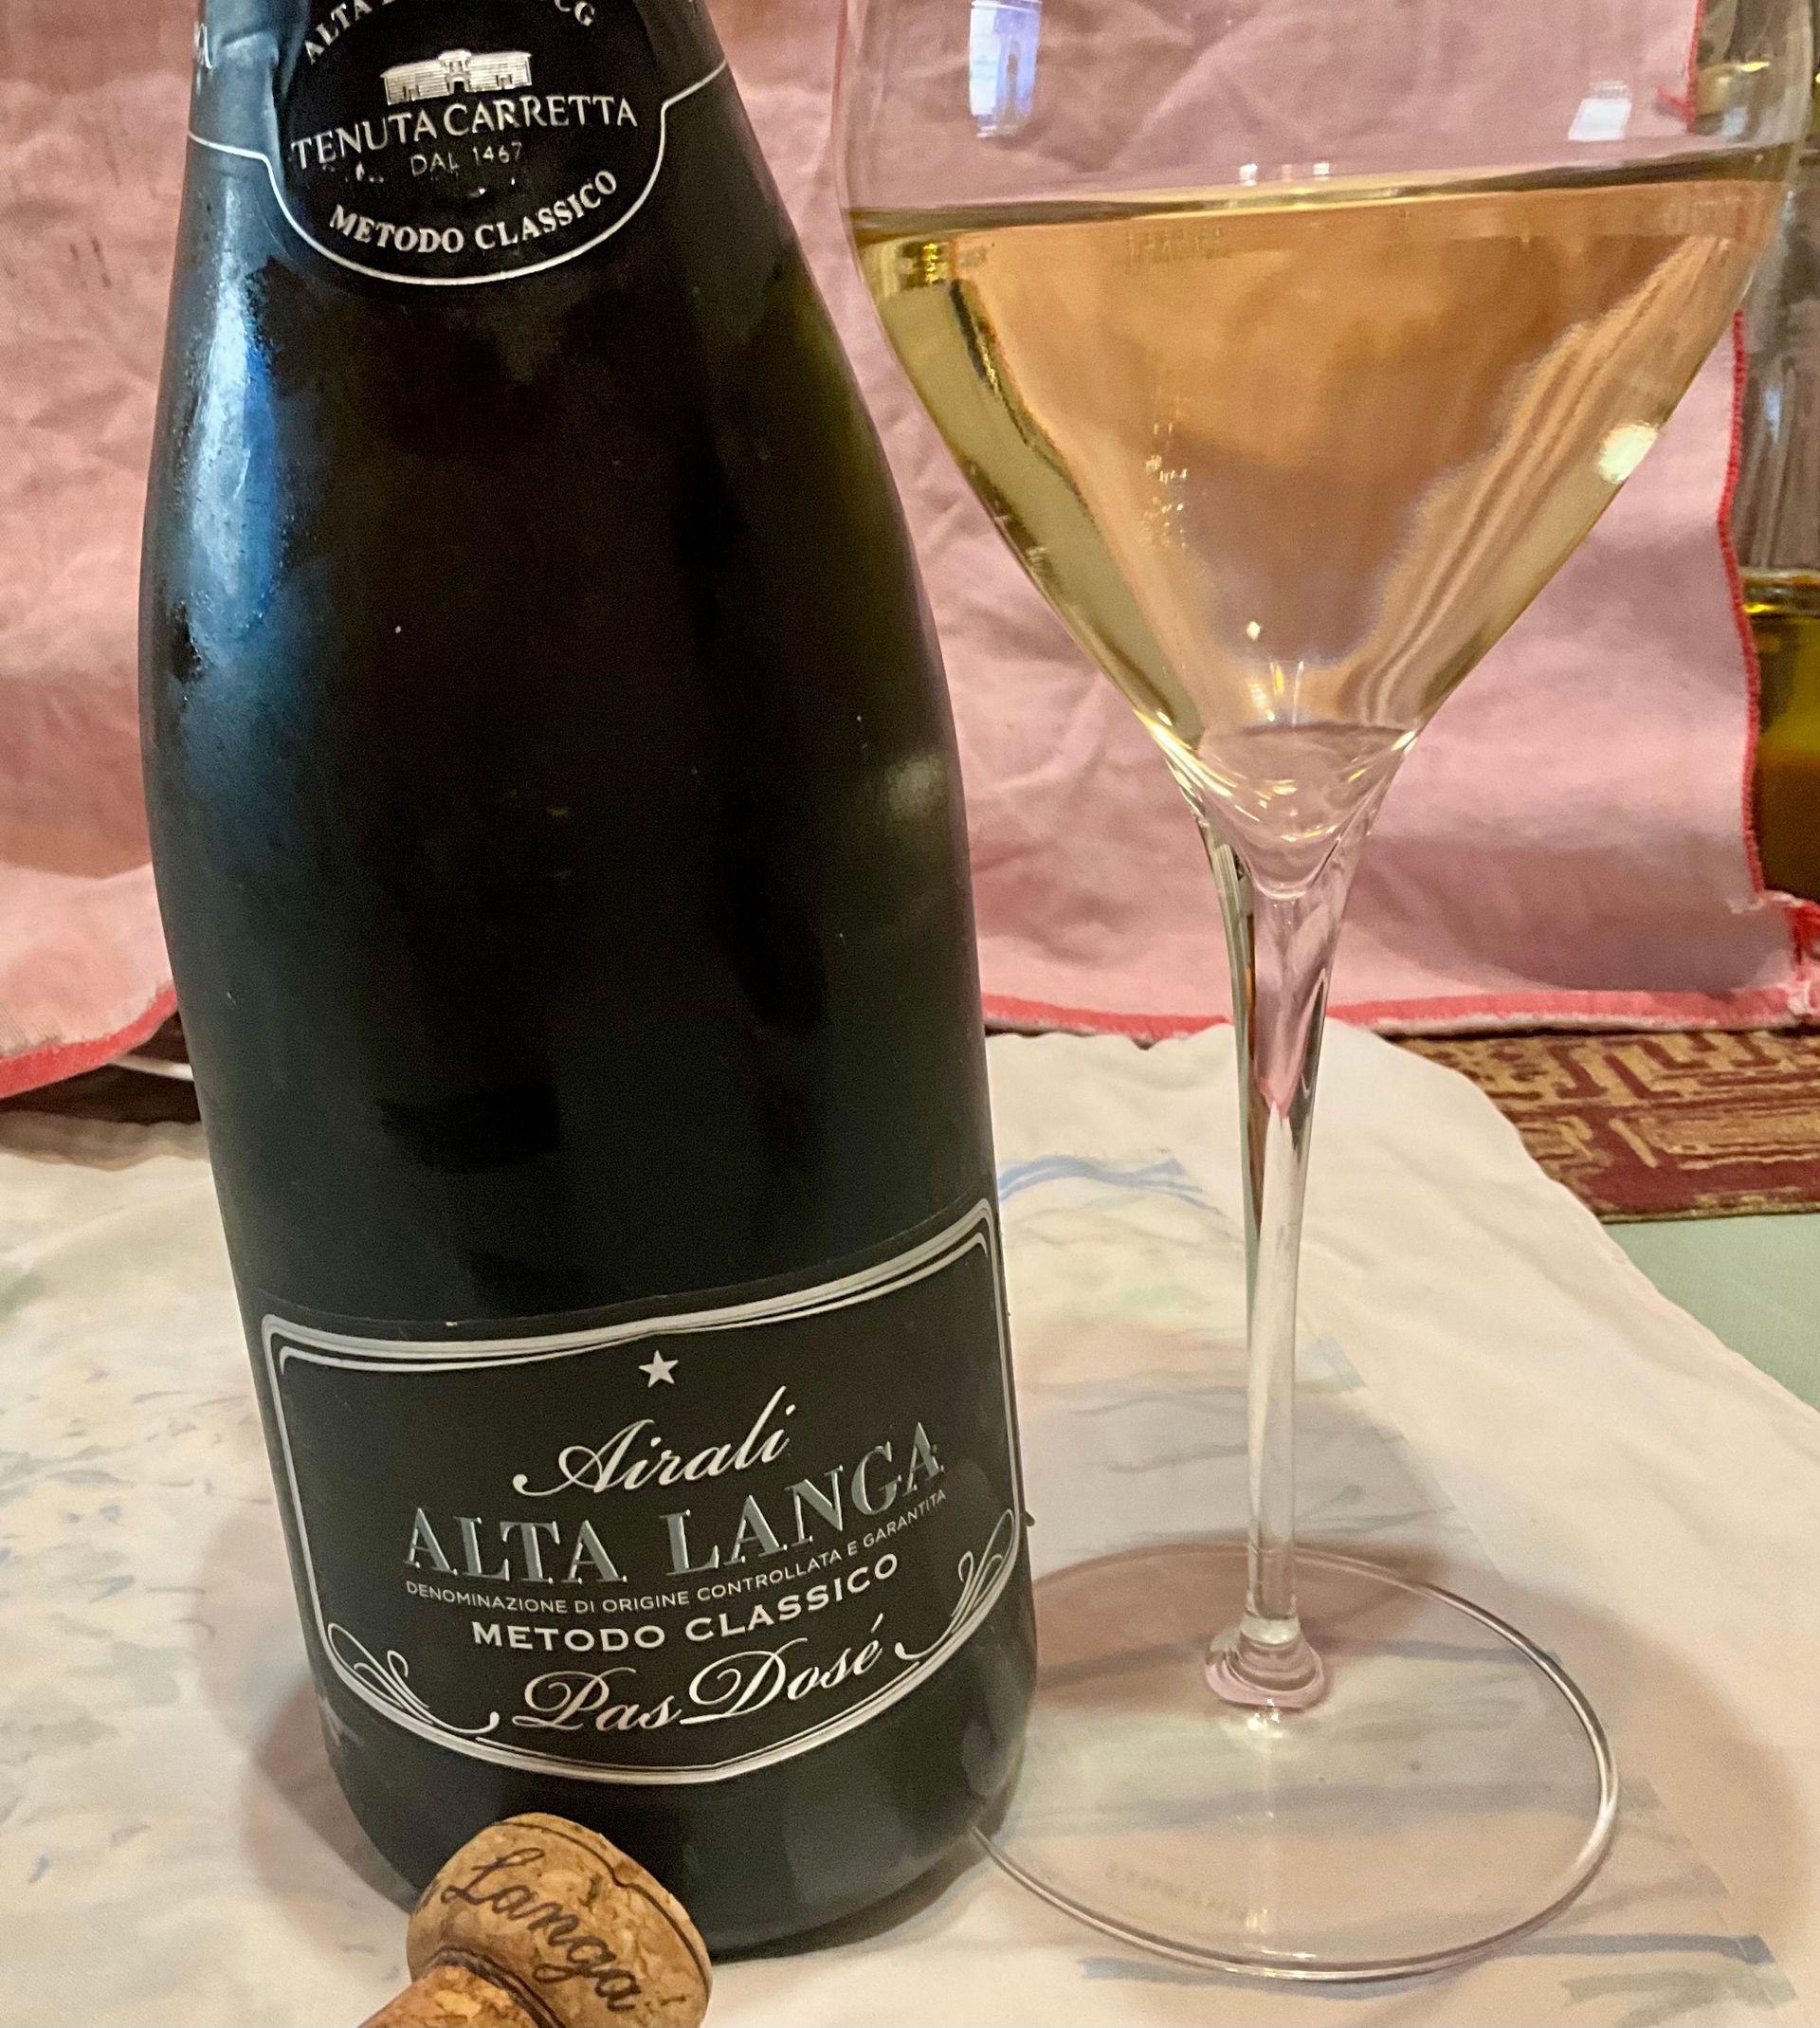 eine Flasche Tenuta Carretta Airali Alta Langa Pas Dosé 2018a steht neben einem gefüllten Weinglas